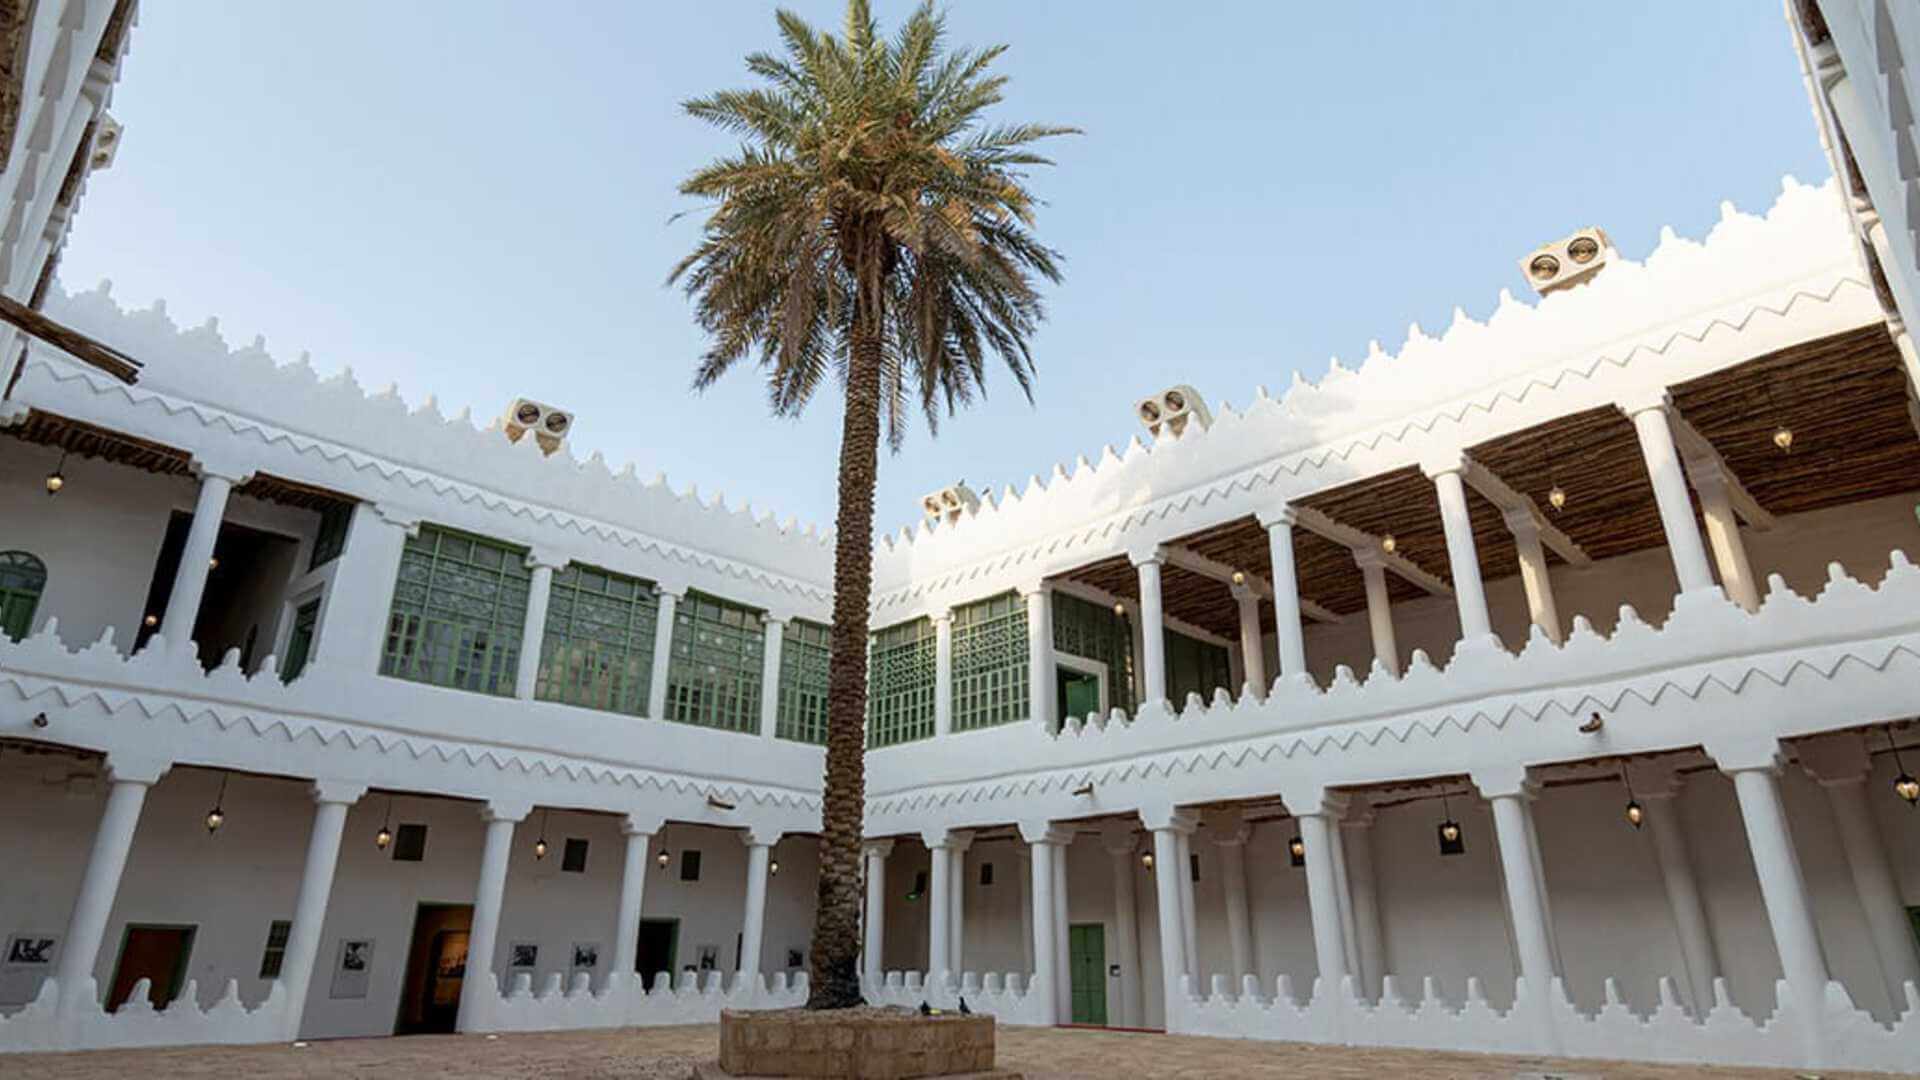 Al-Murabba Historical Palace